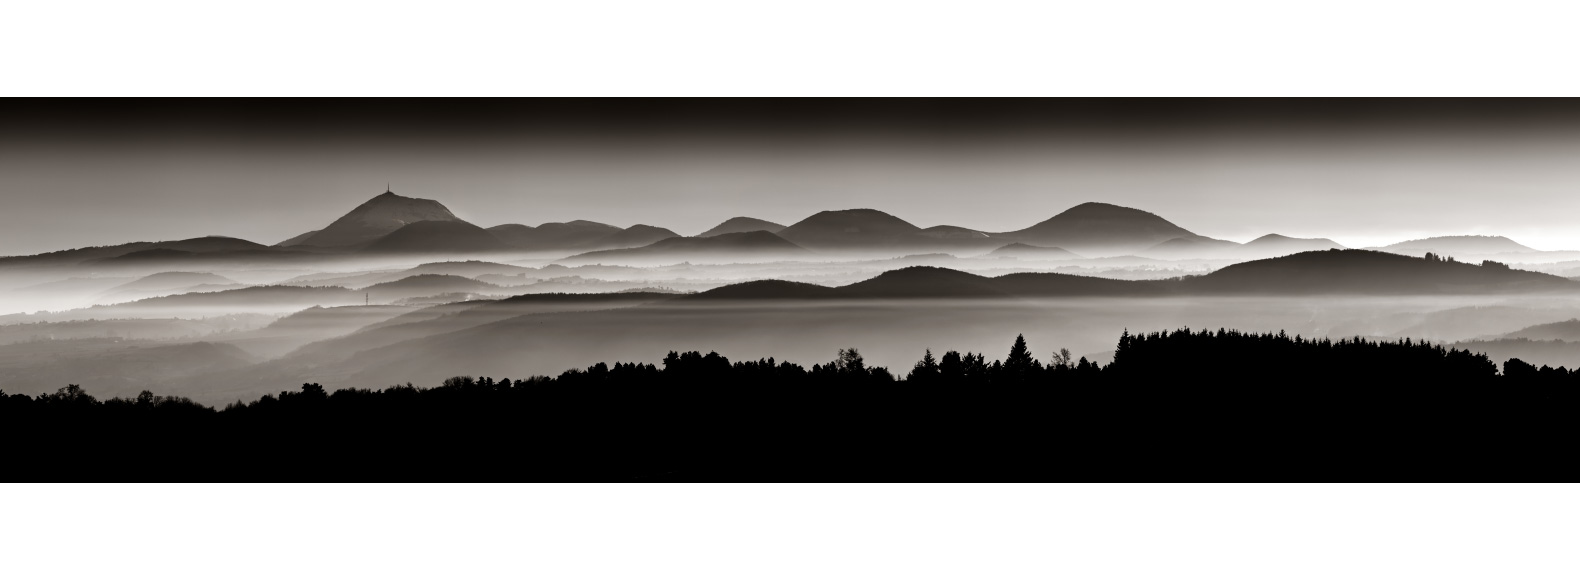 Le Puy-de-Dôme et les volcans d'Auvergne en noir et blanc